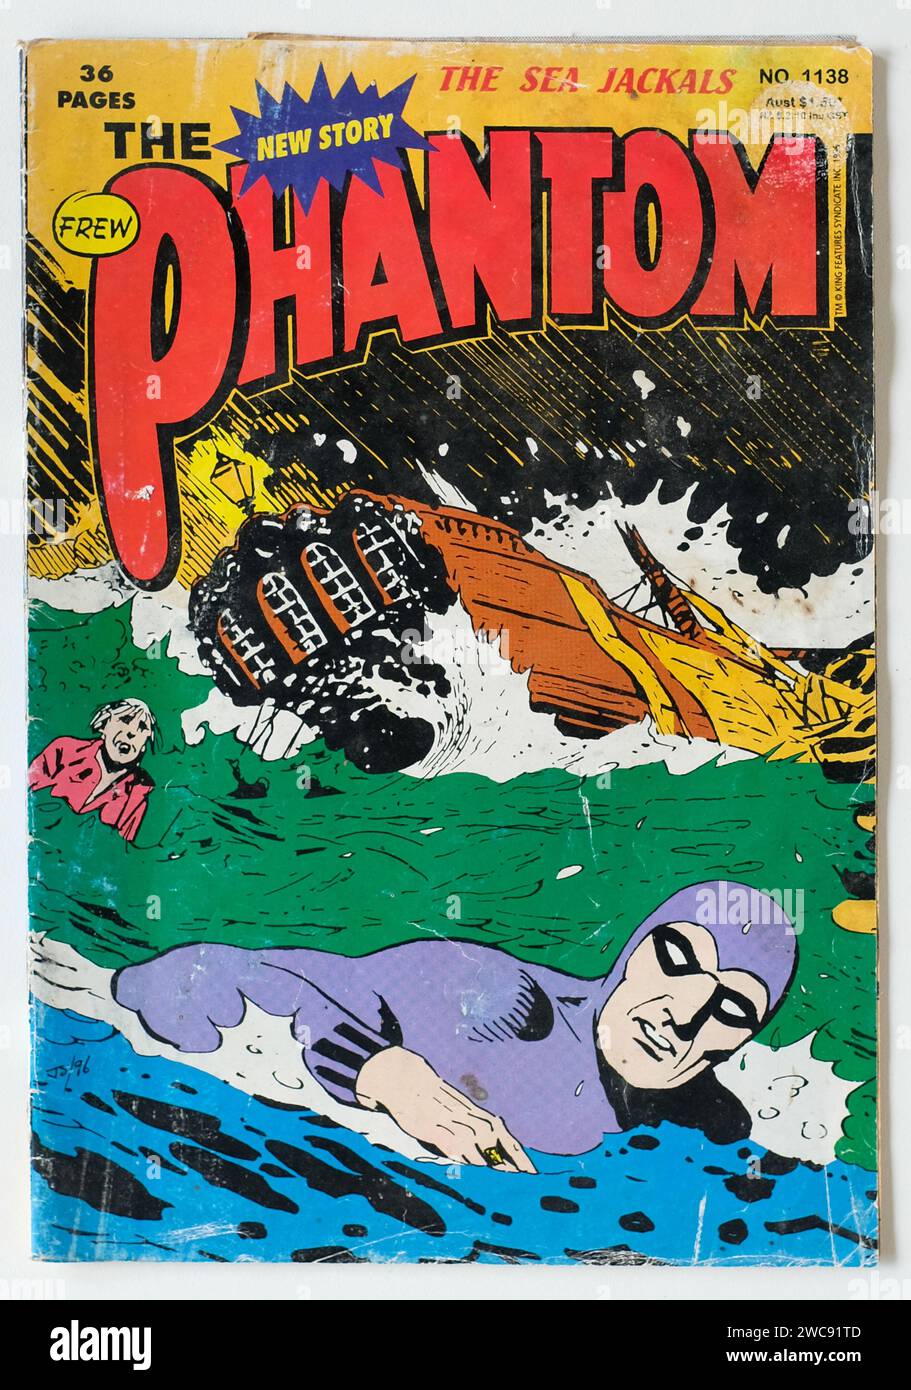 La couverture de la bande dessinée Phantom, The Sea Jackals - King Features - ÉDITORIAL SEULEMENT Banque D'Images